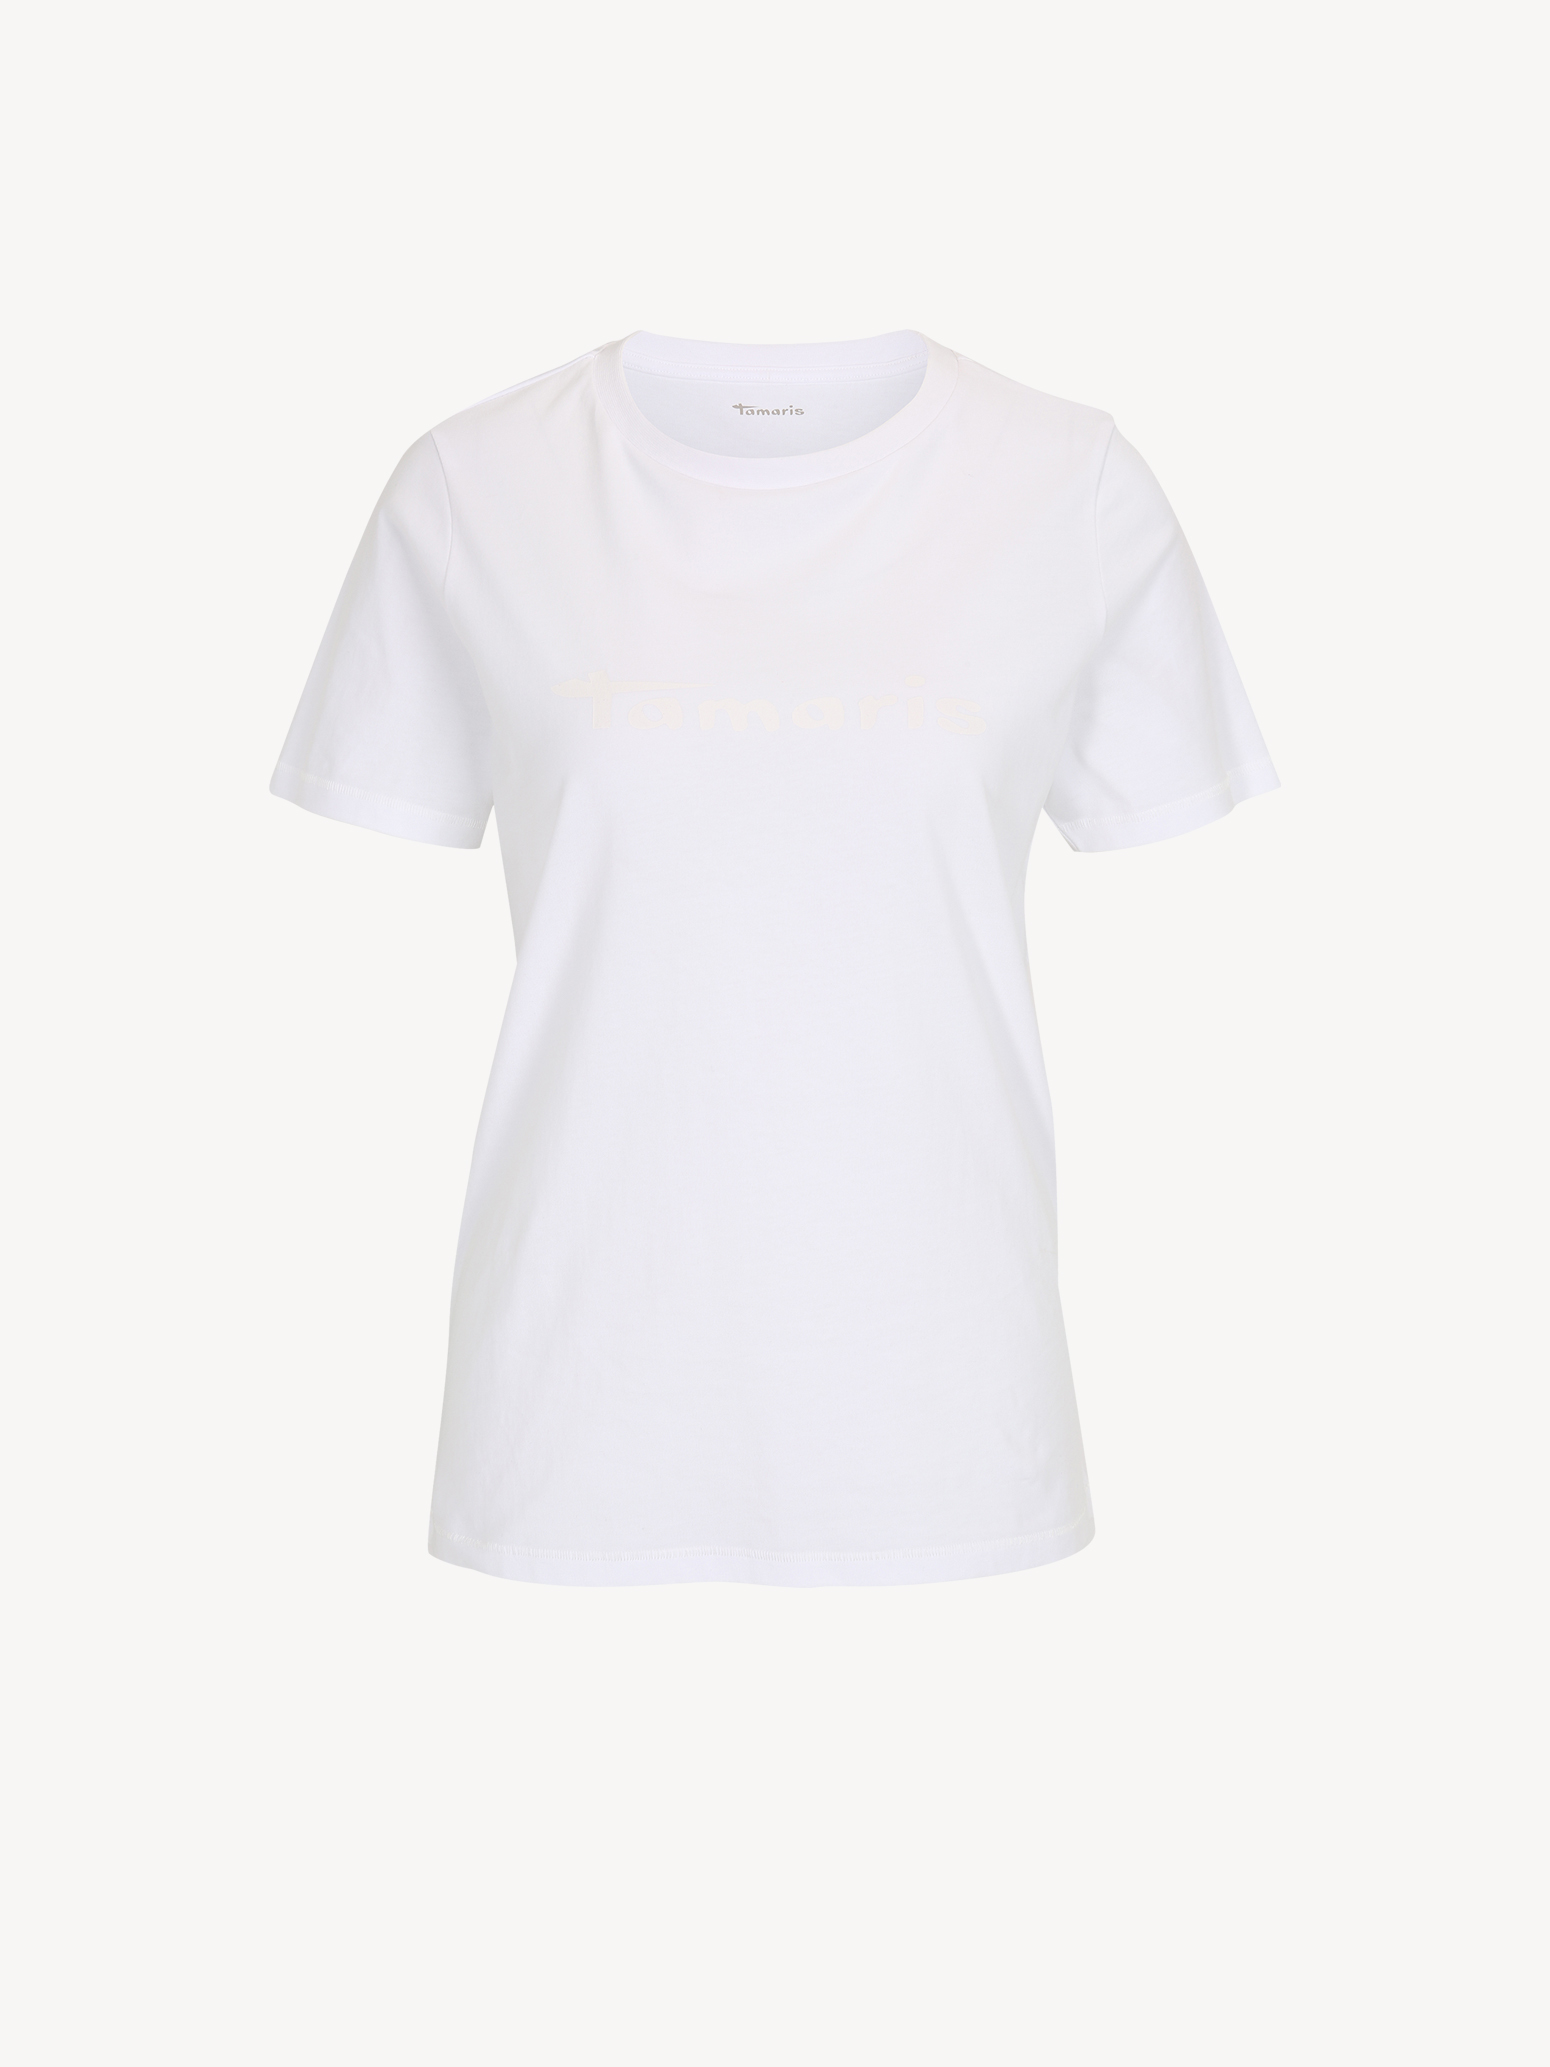 Μπλουζάκια Τ-σιρτ - λευκό